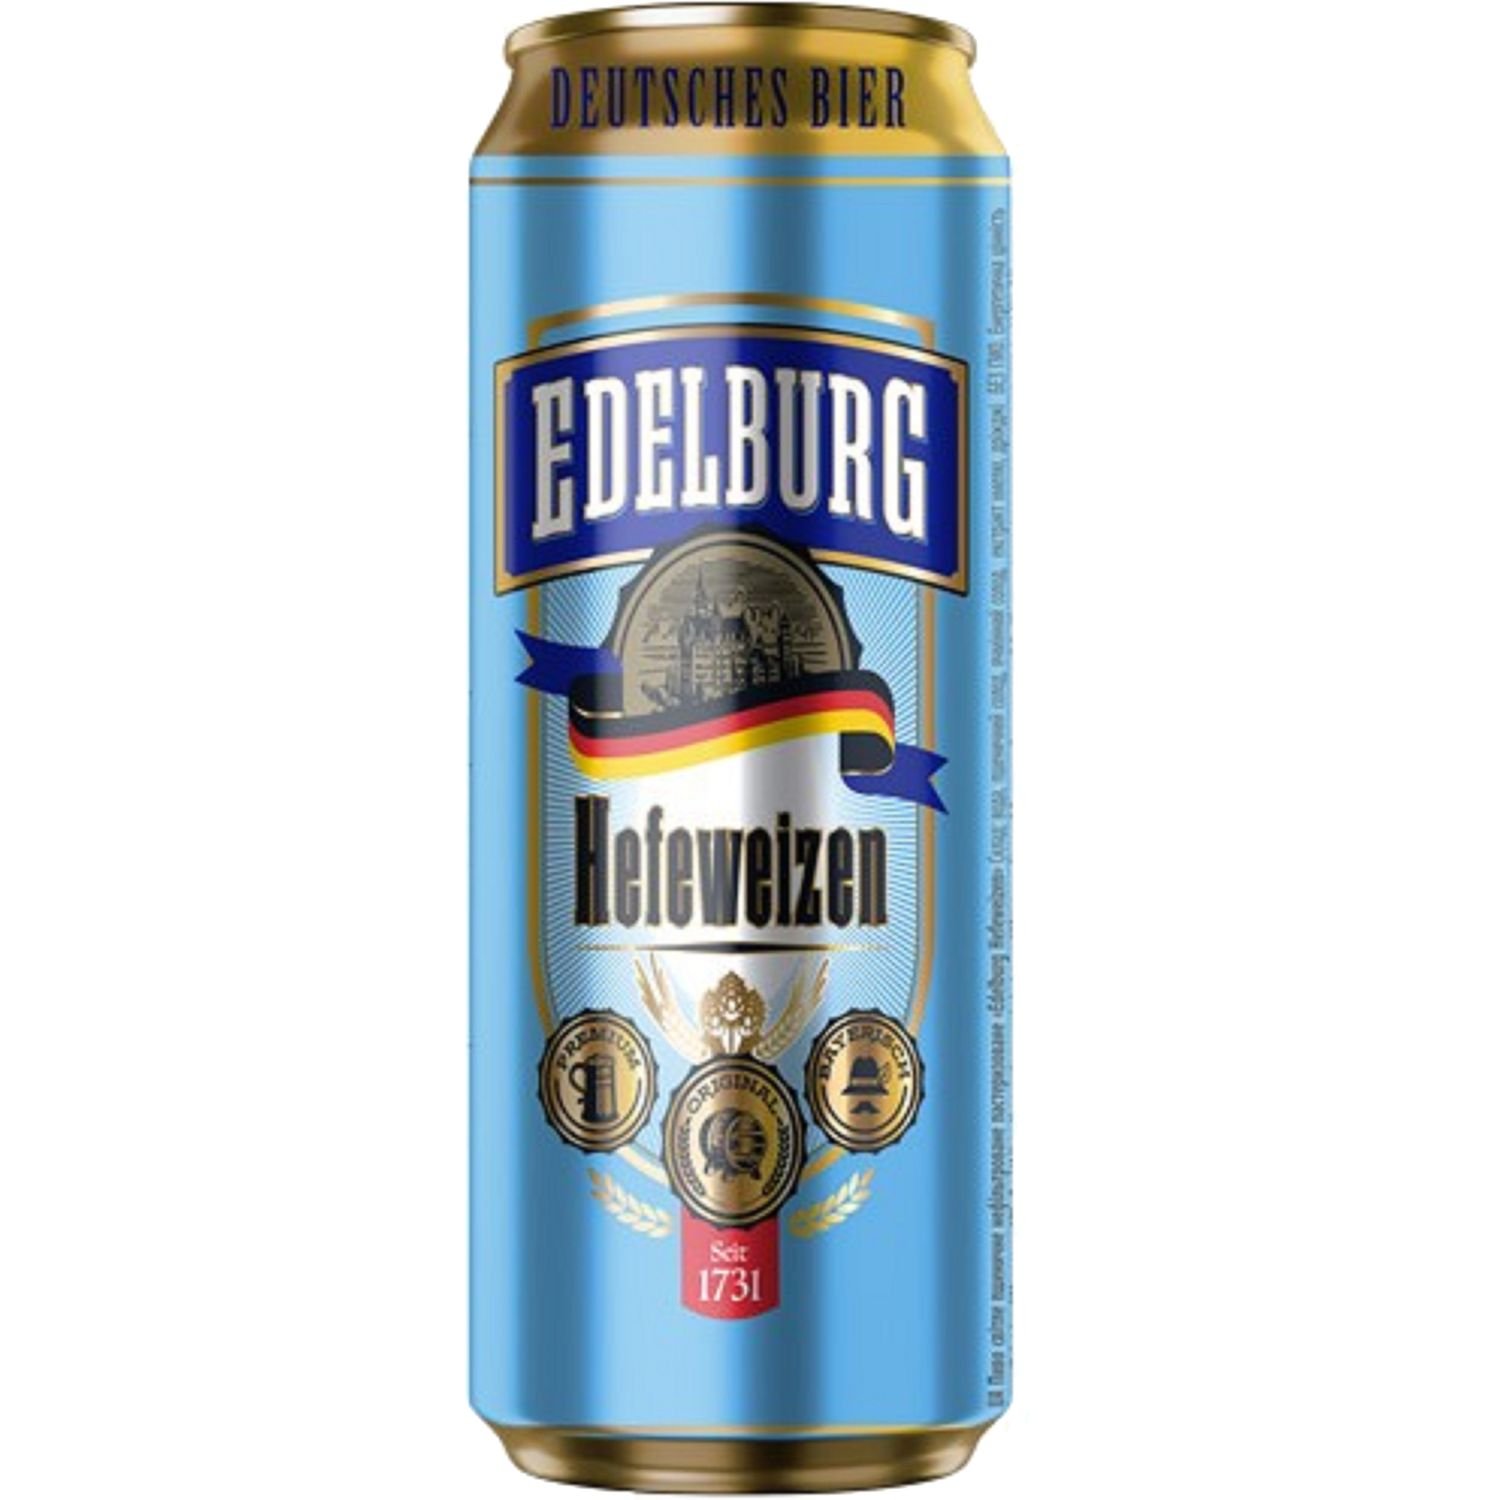 Пиво Edelburg Hefeweizen, светлое, нефильтрованное, 5,1%, ж/б, 0,5 л - фото 1